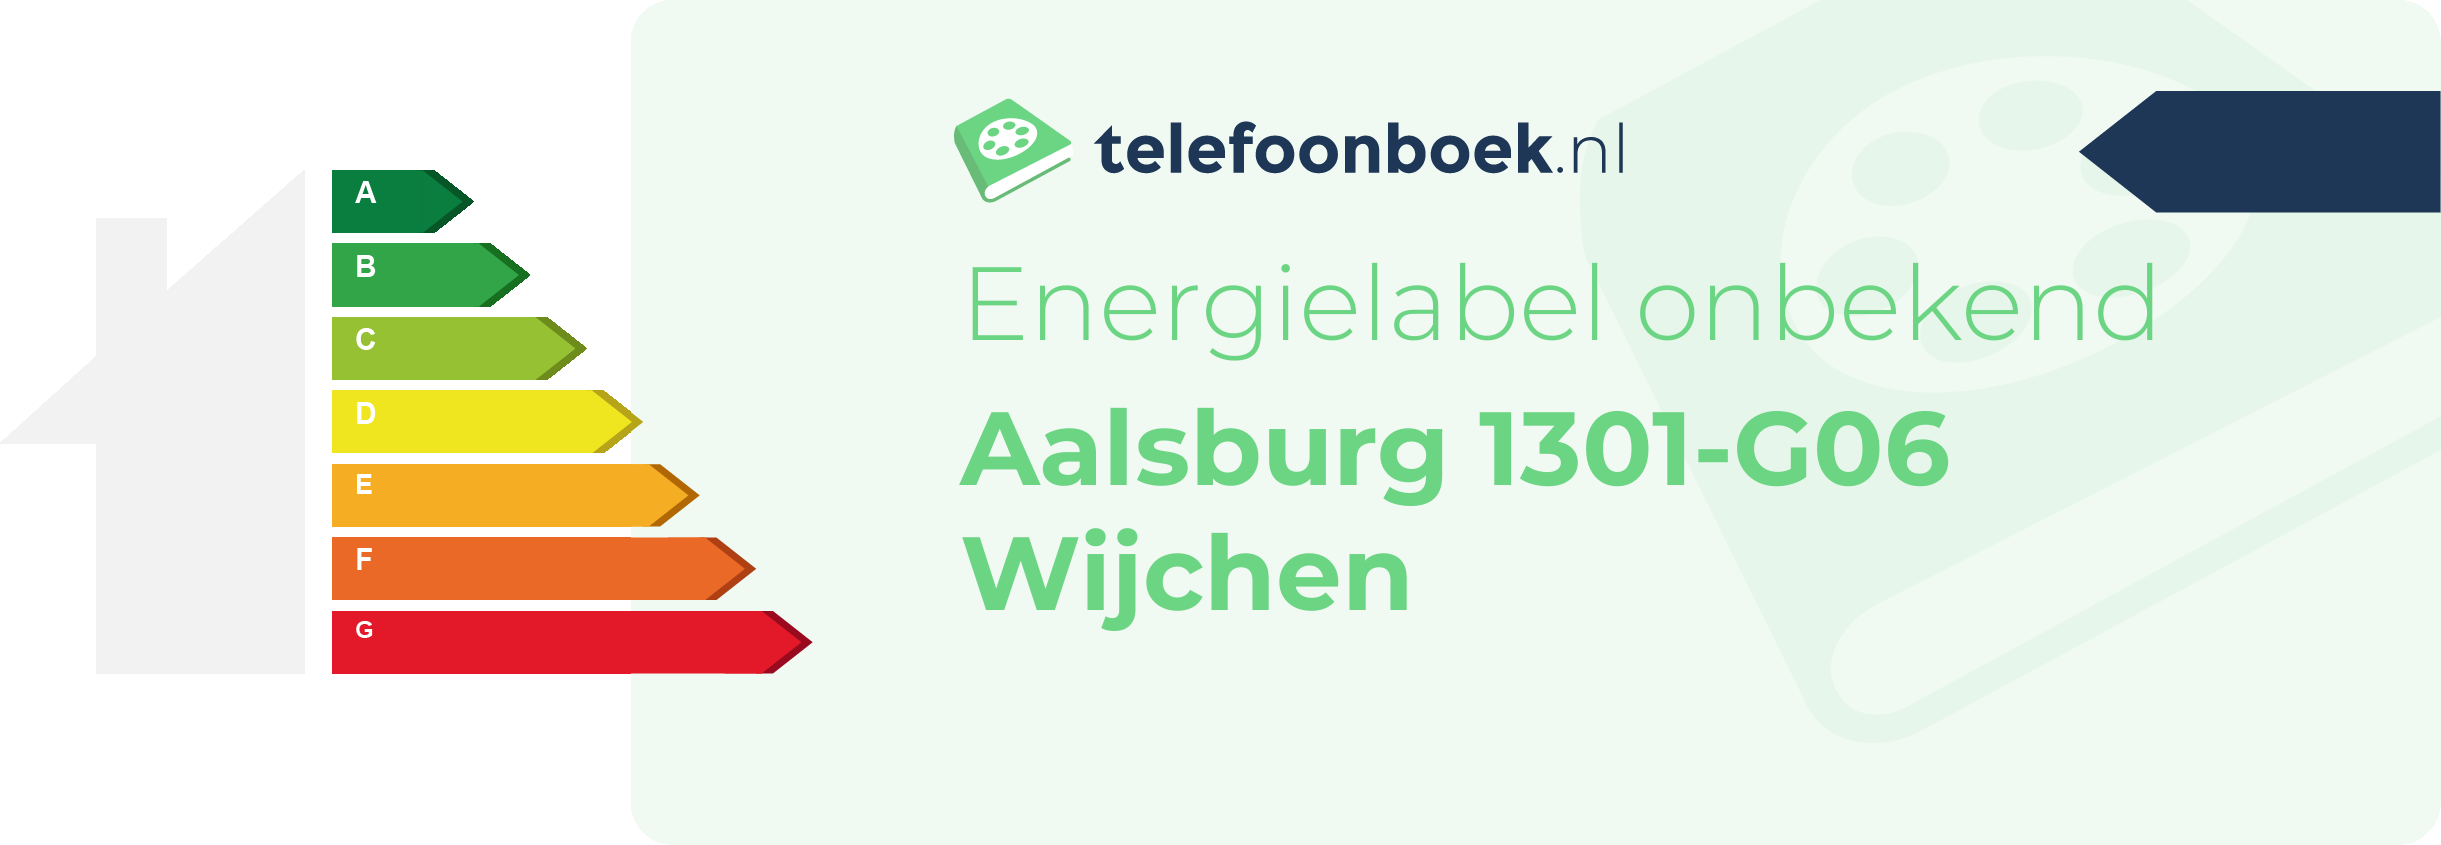 Energielabel Aalsburg 1301-G06 Wijchen